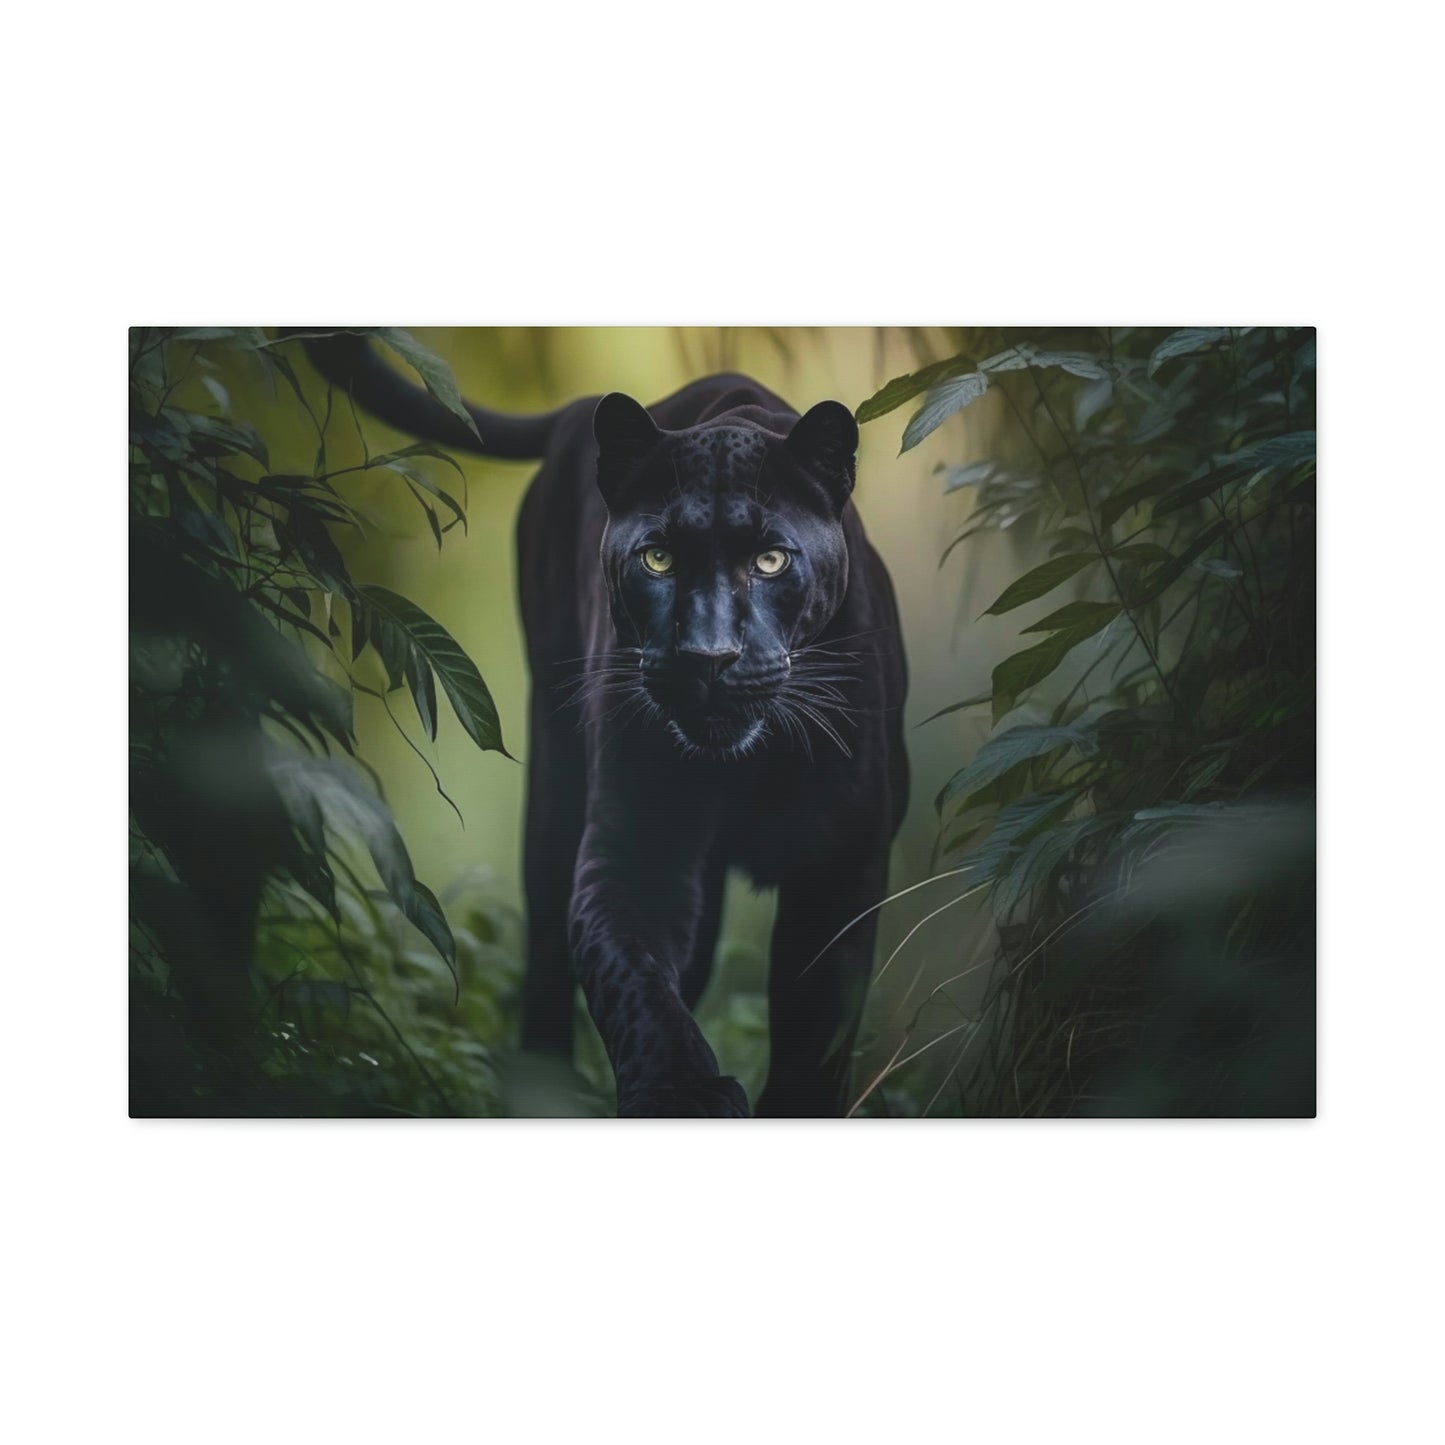 Black Panther walking